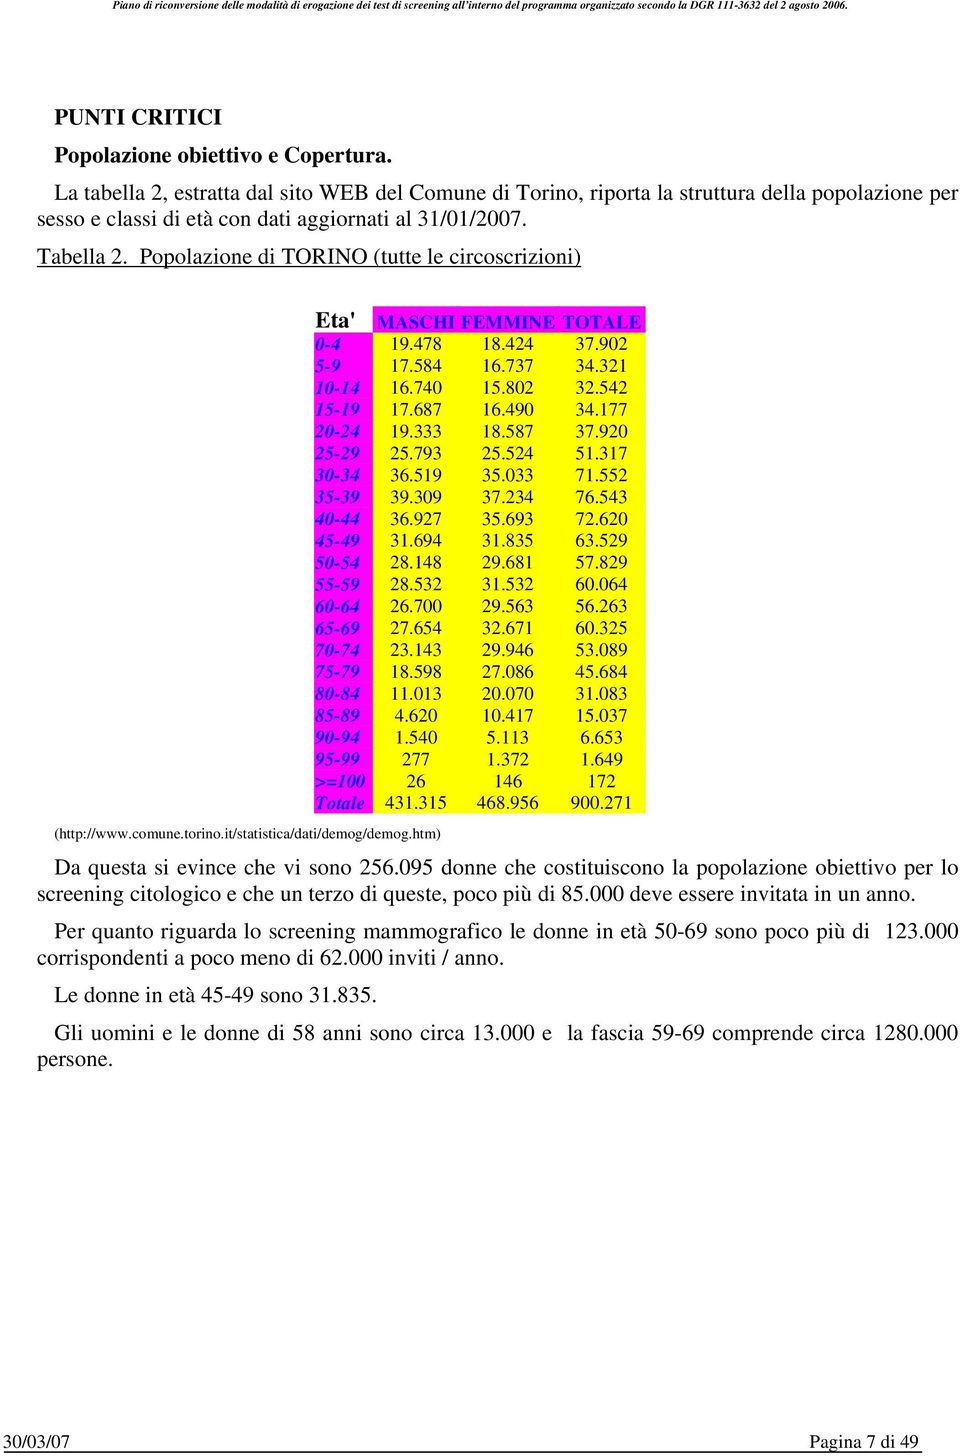 Popolazione di TORINO (tutte le circoscrizioni) (http://www.comune.torino.it/statistica/dati/demog/demog.htm) Eta' MASCHI FEMMINE TOTALE 0-4 19.478 18.424 37.902 5-9 17.584 16.737 34.321 10-14 16.